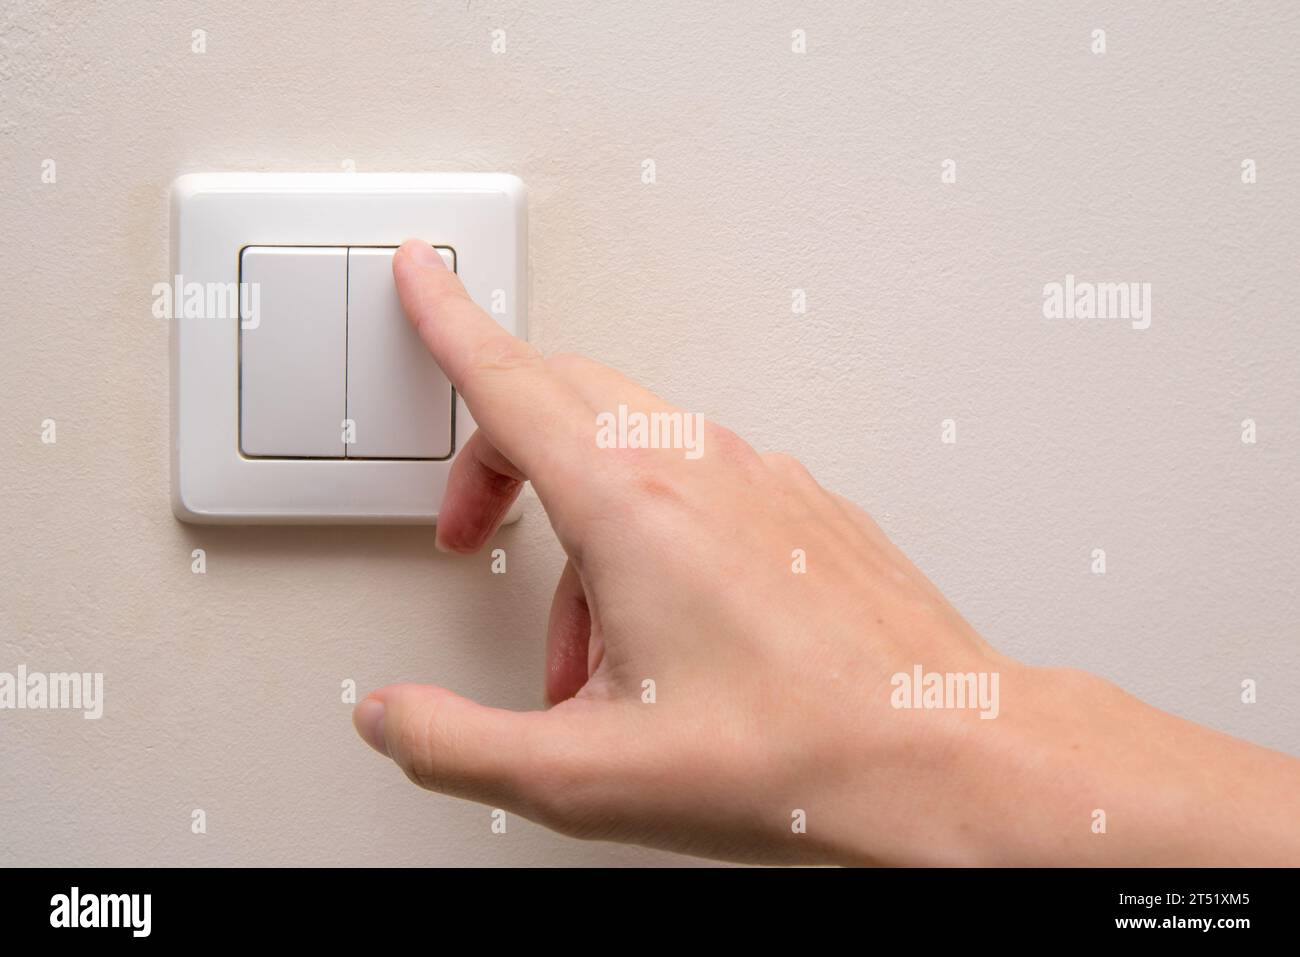 Ein Nahaufnahfingerlicht schaltet das Licht am Touch-Schalter ein